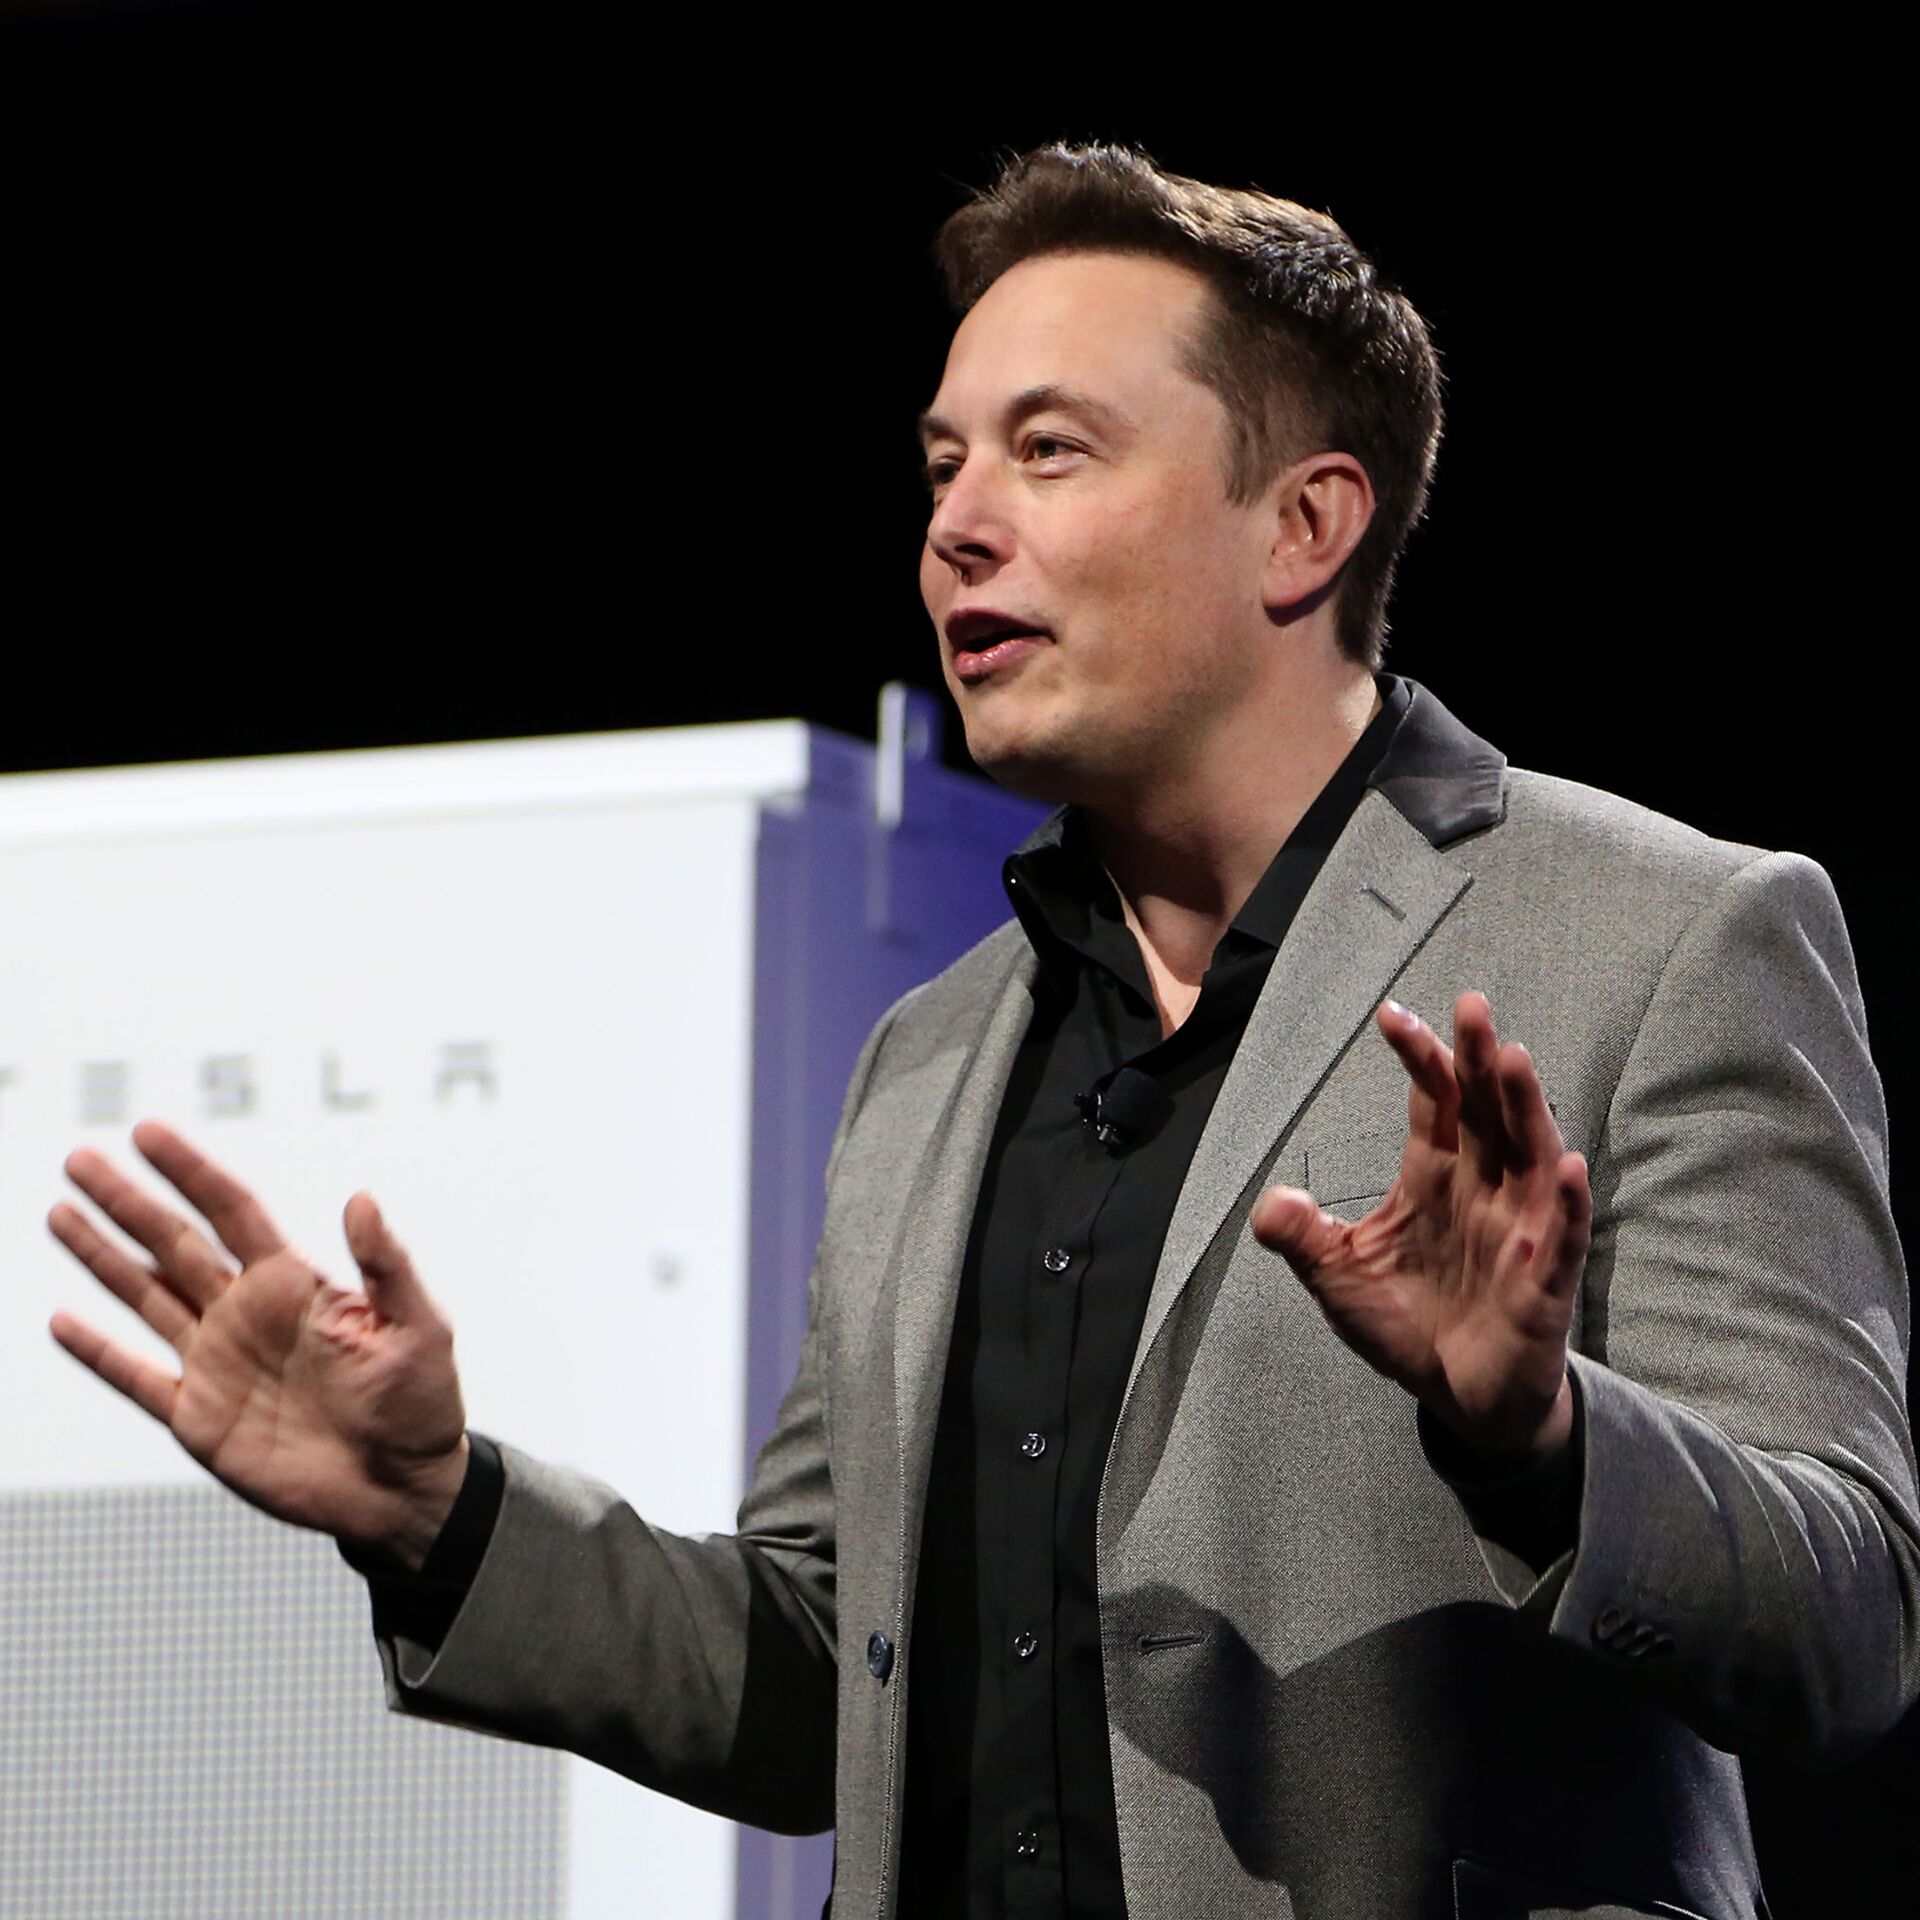 Elon Musk Twitter live updates: Rep. Ro Khanna speaks out